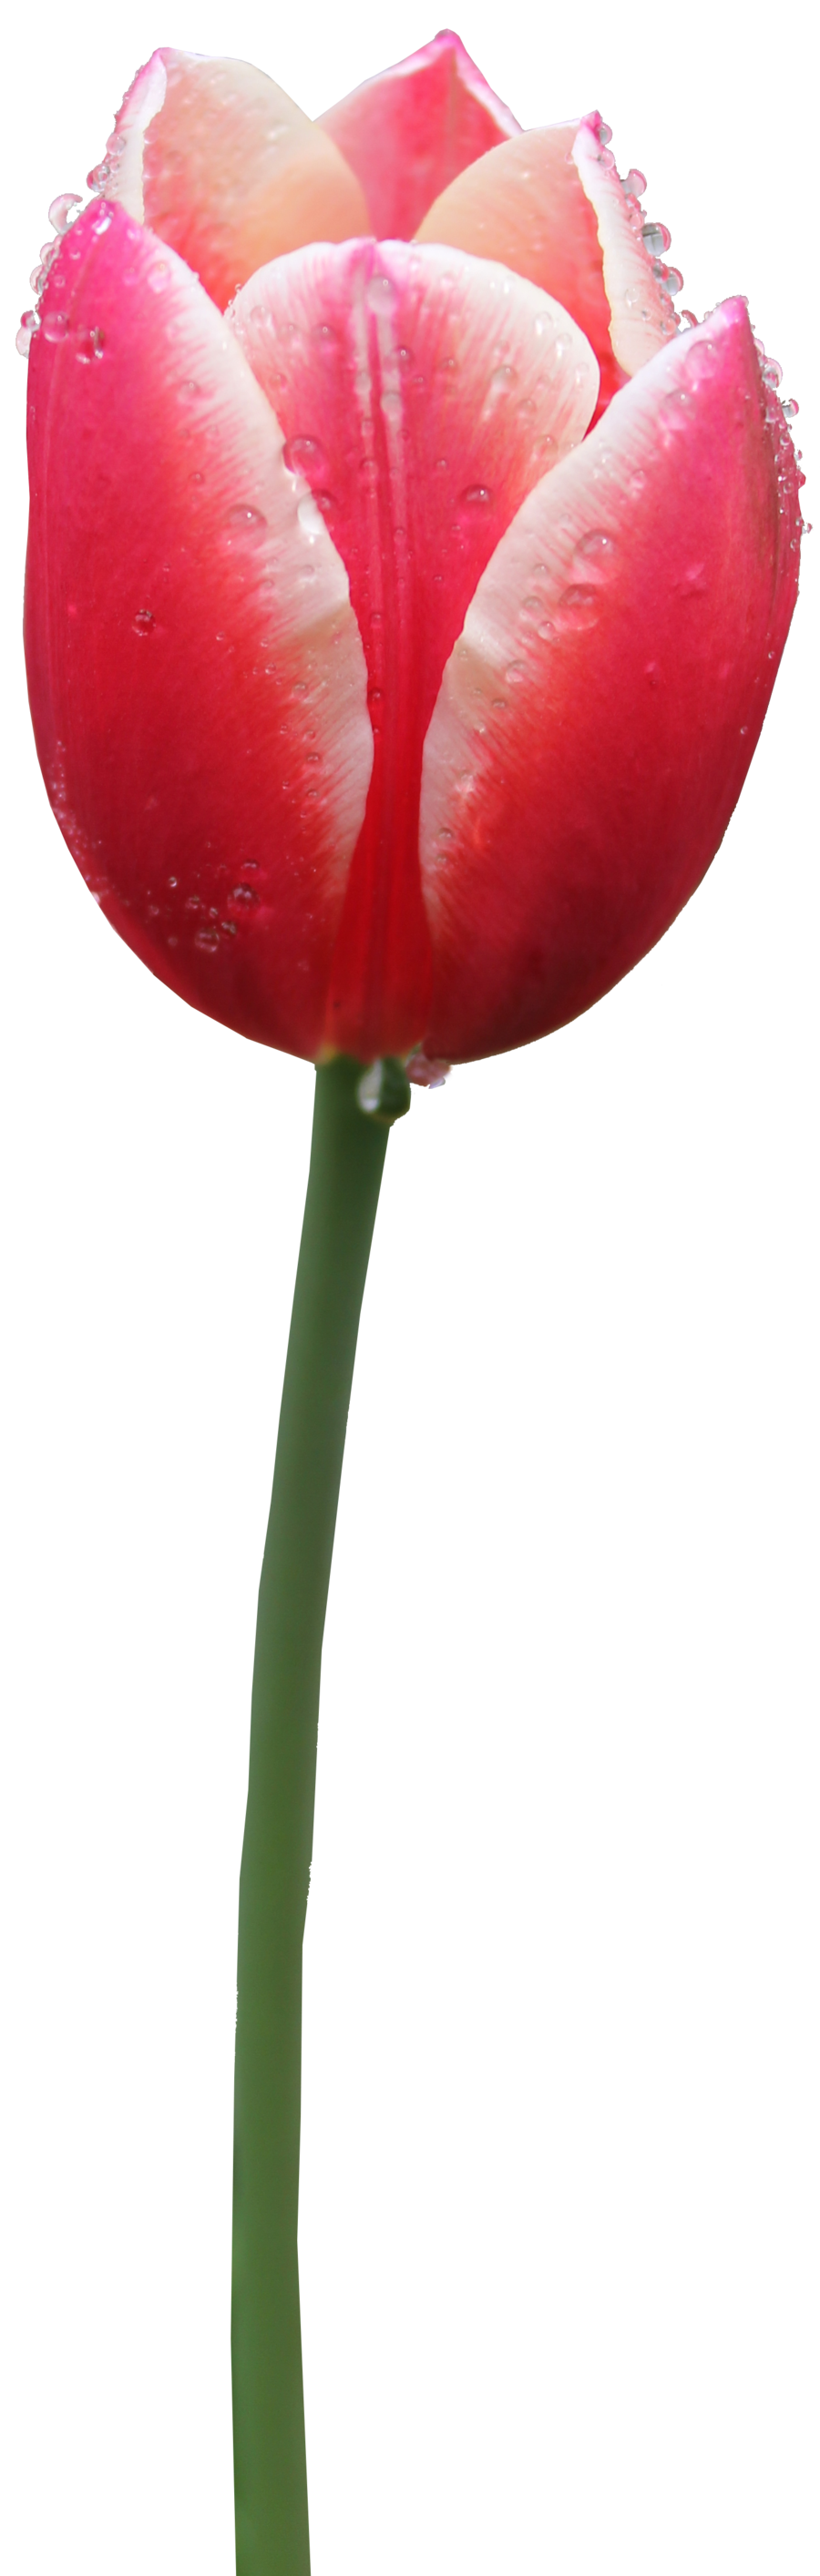 Tulip Free PNG Image